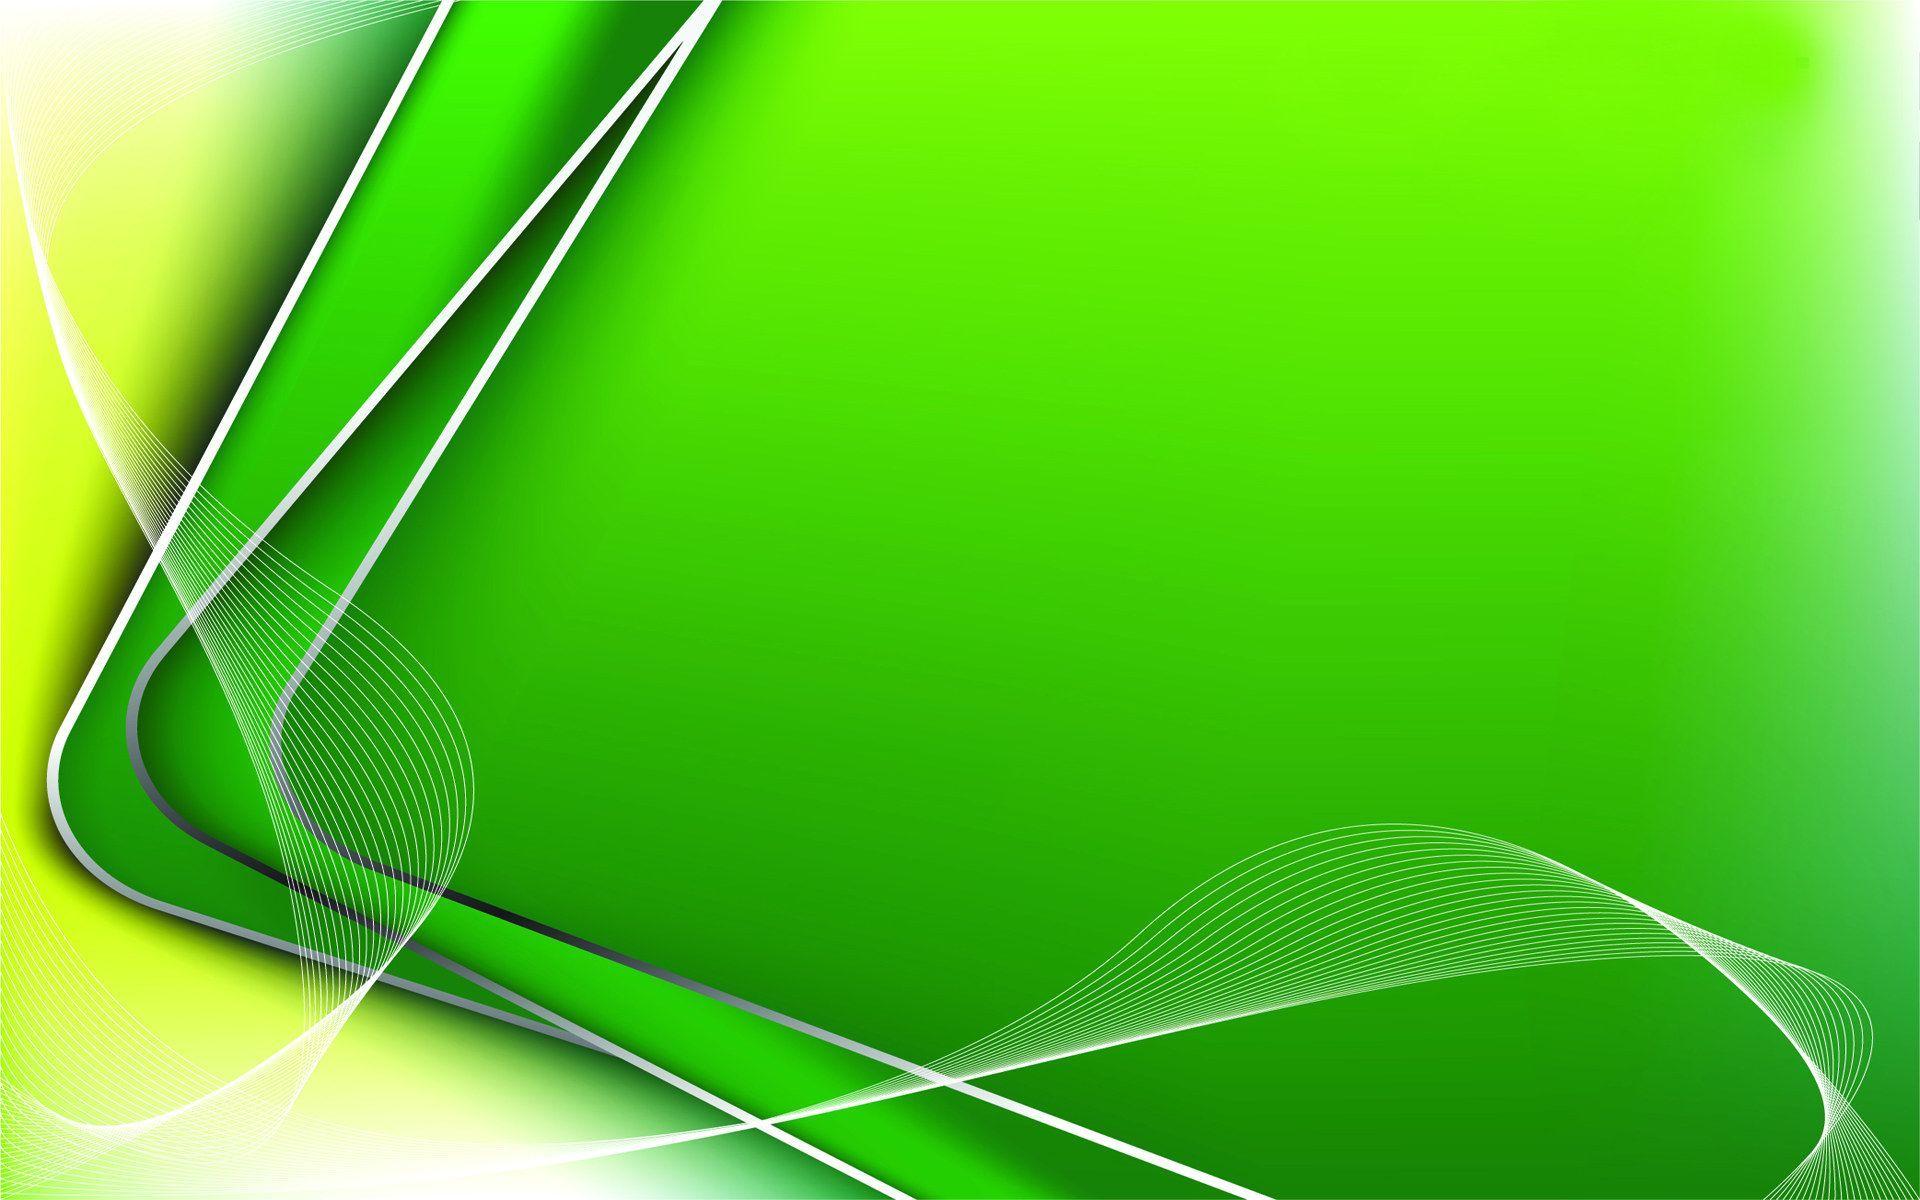 Hình nền màu xanh (Green Color Wallpaper): Màu xanh là màu của sự thư giãn và bình yên. Hình nền màu xanh sẽ giúp cho bạn giảm stress và mang lại cảm giác thư thái khi làm việc trên màn hình. Với thiết kế đơn giản và tinh tế, hình nền màu xanh sẽ làm cho màn hình của bạn trở nên thanh lịch và đẹp mắt.